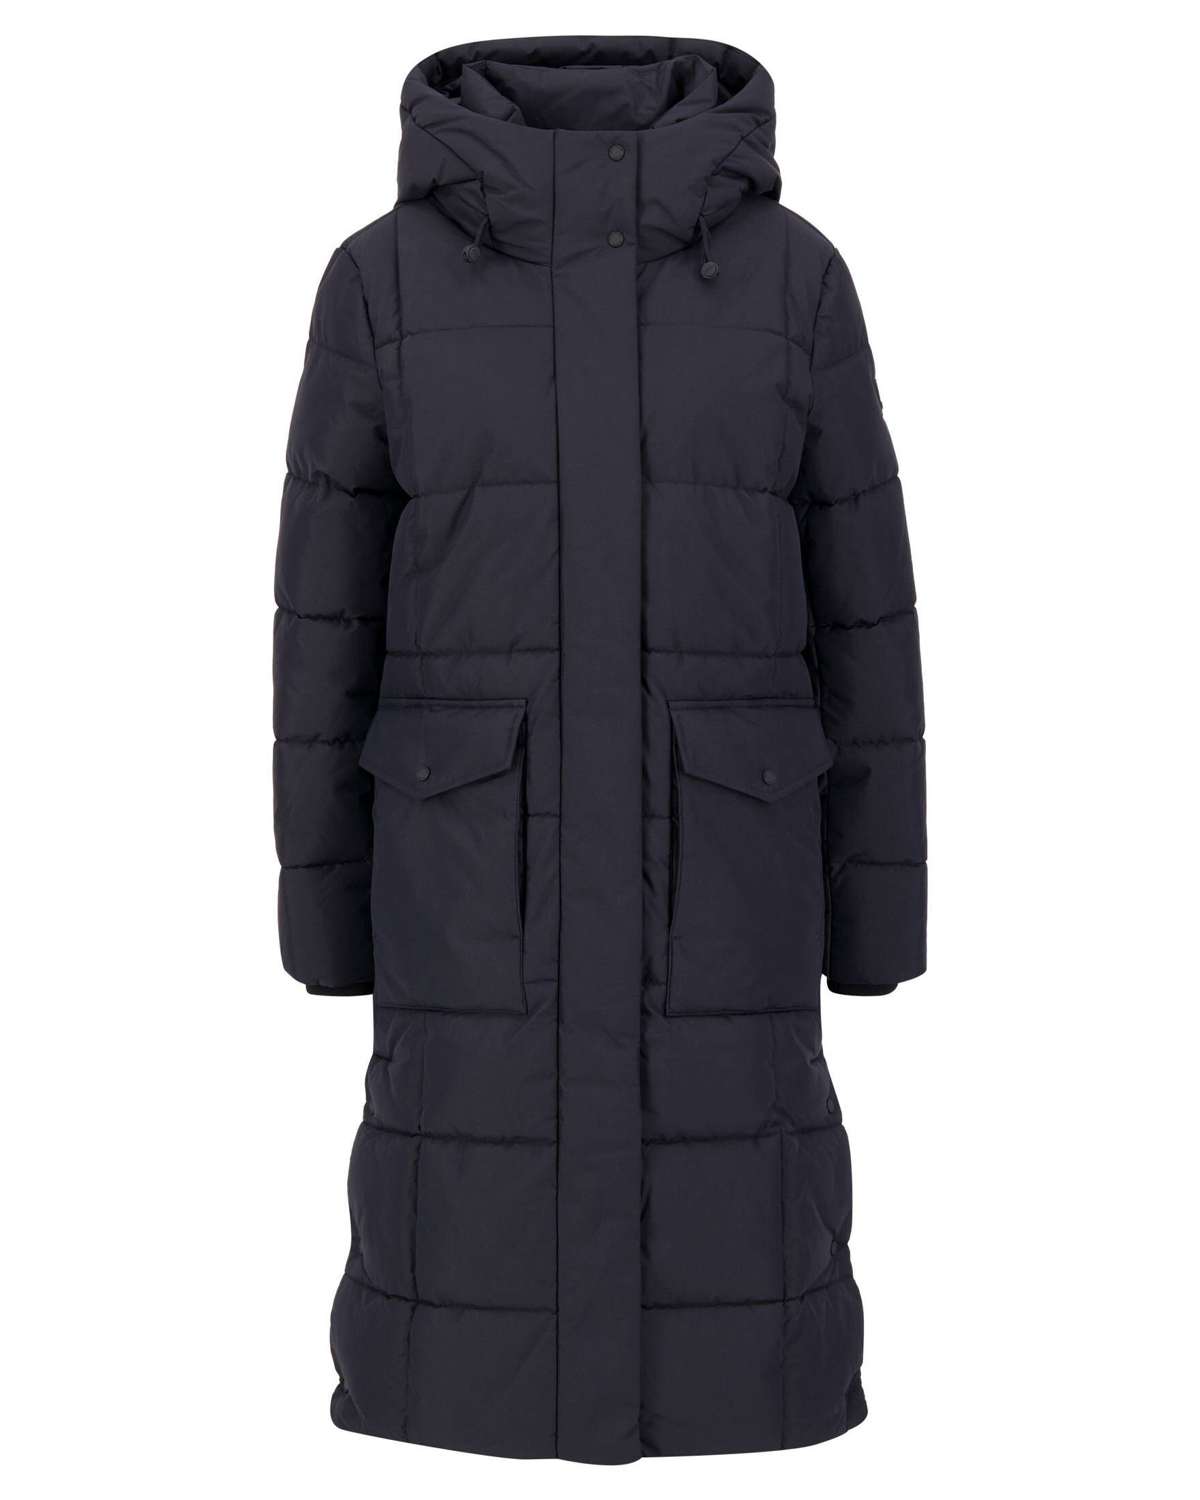 Стеганое пальто женское стеганое пальто ARCTIC PUFFER COAT (1 шт.)